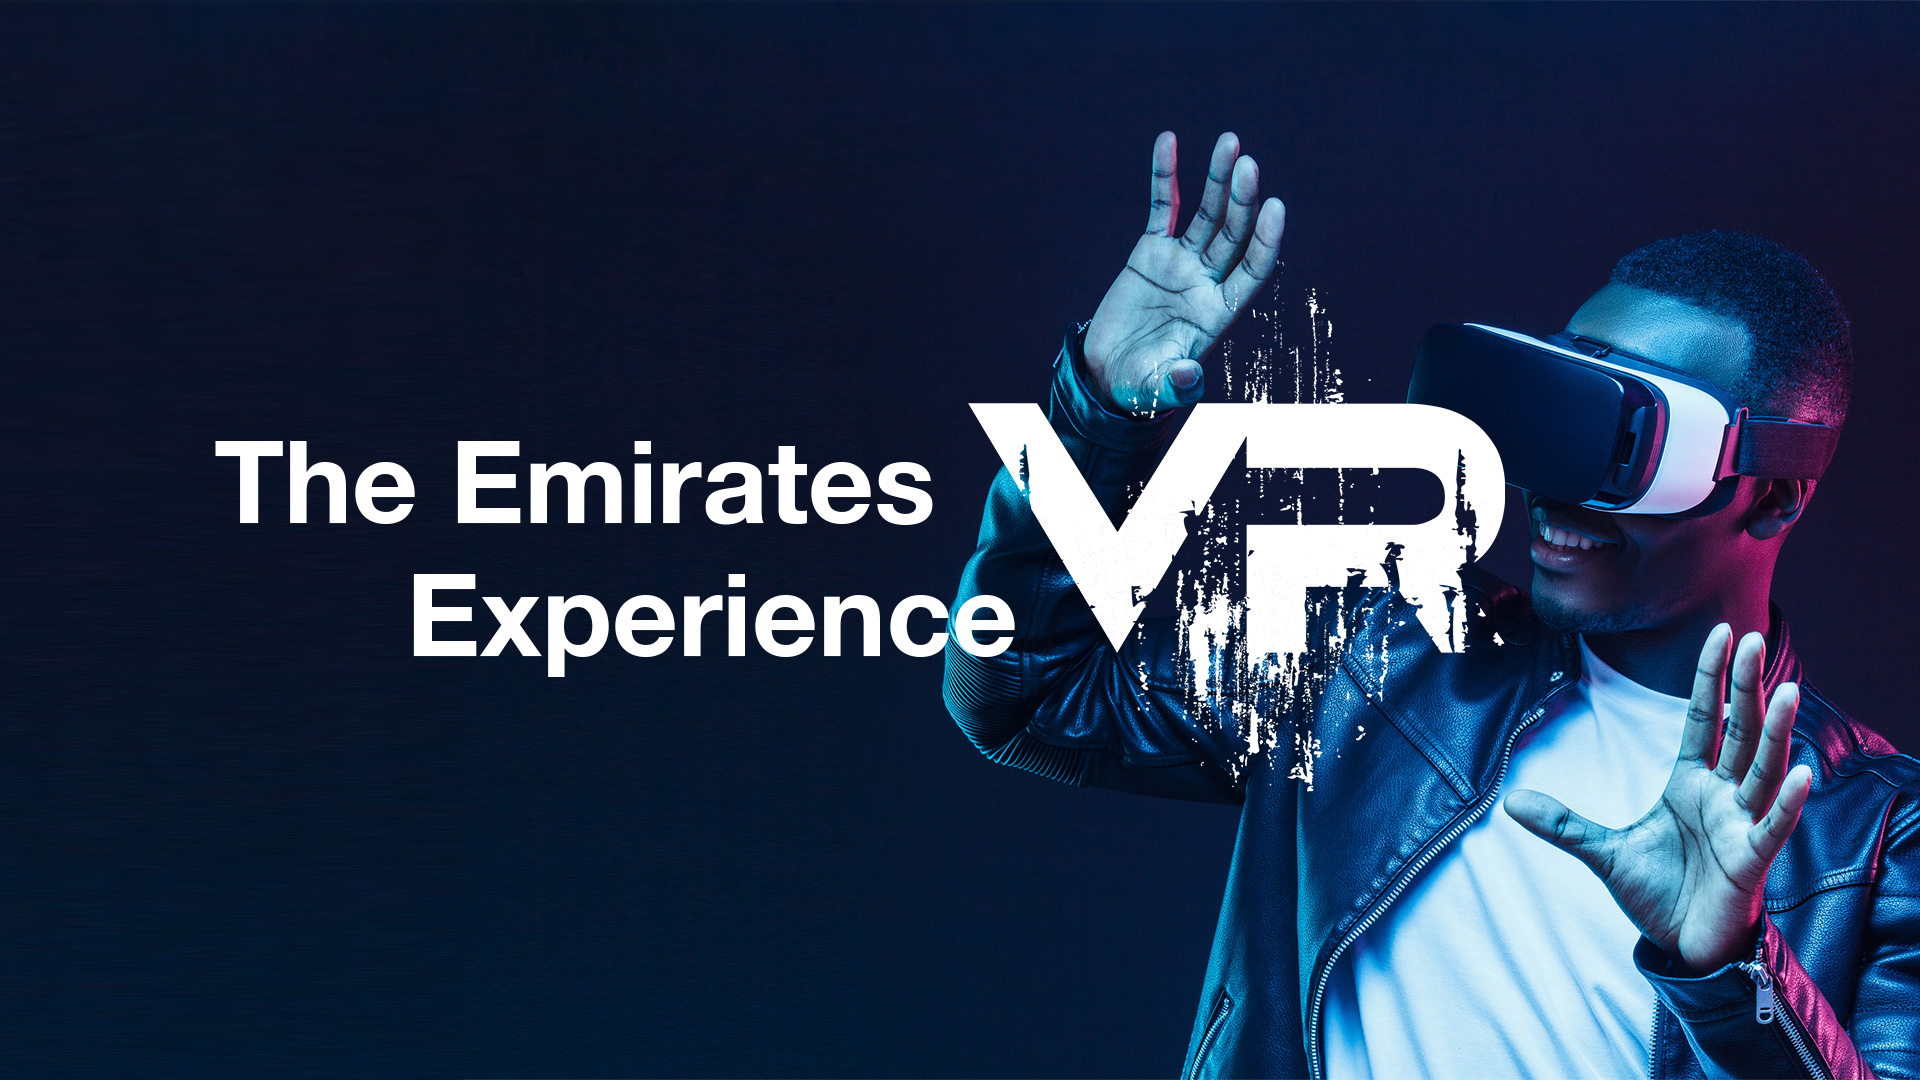 Emirates lanza la primera experiencia de realidad virtual de una aerolínea